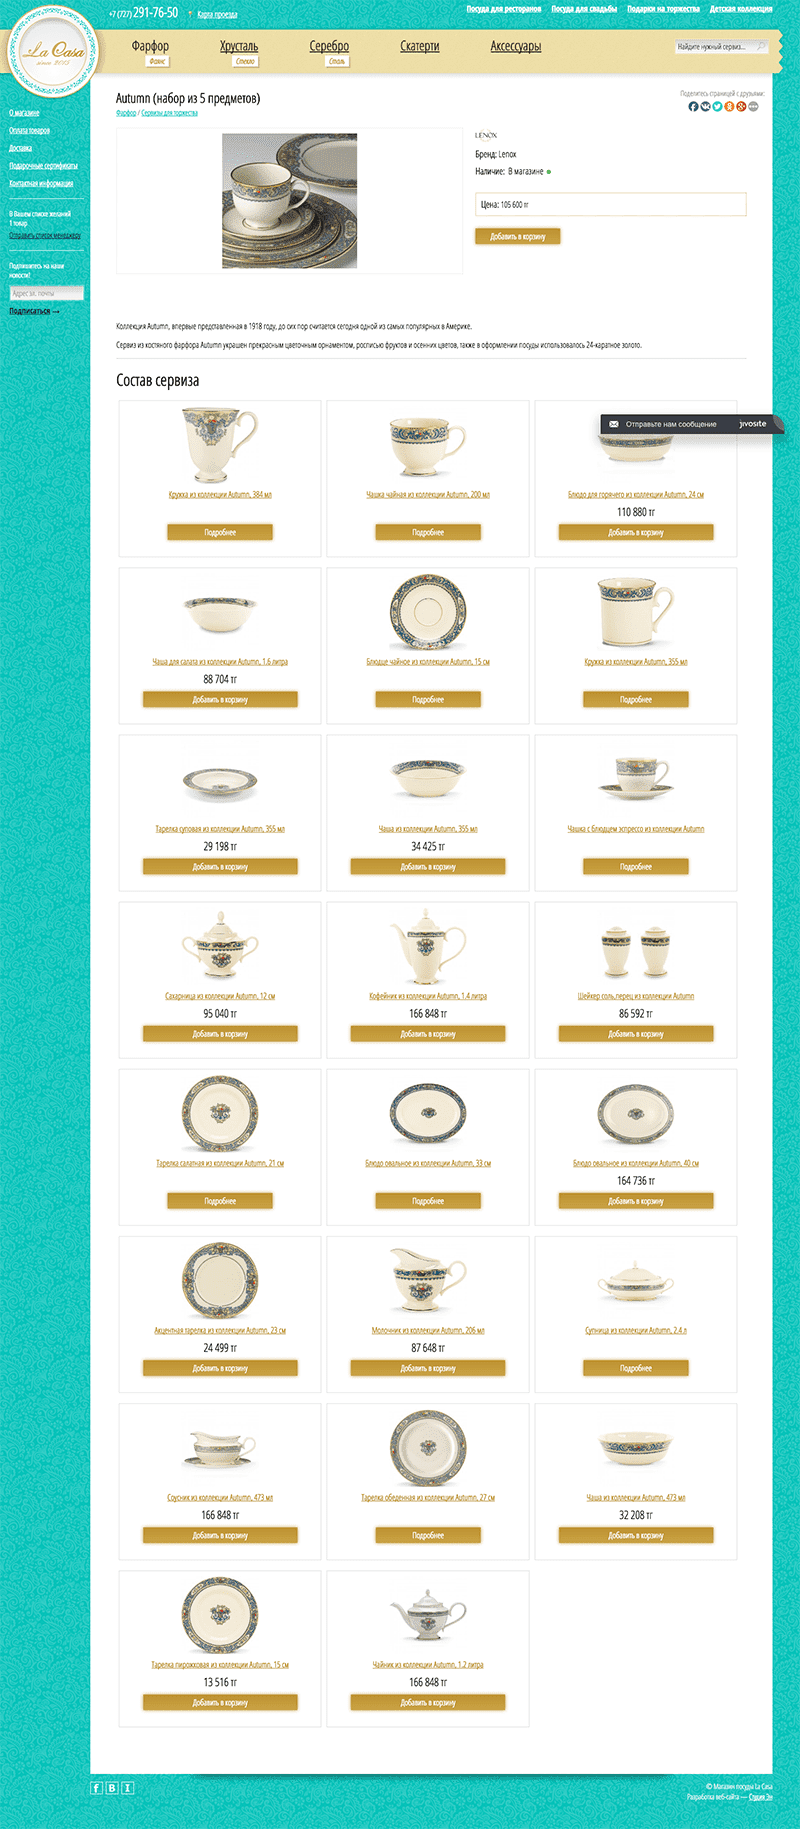 Веб-сайт магазина элитной посуды La Casa